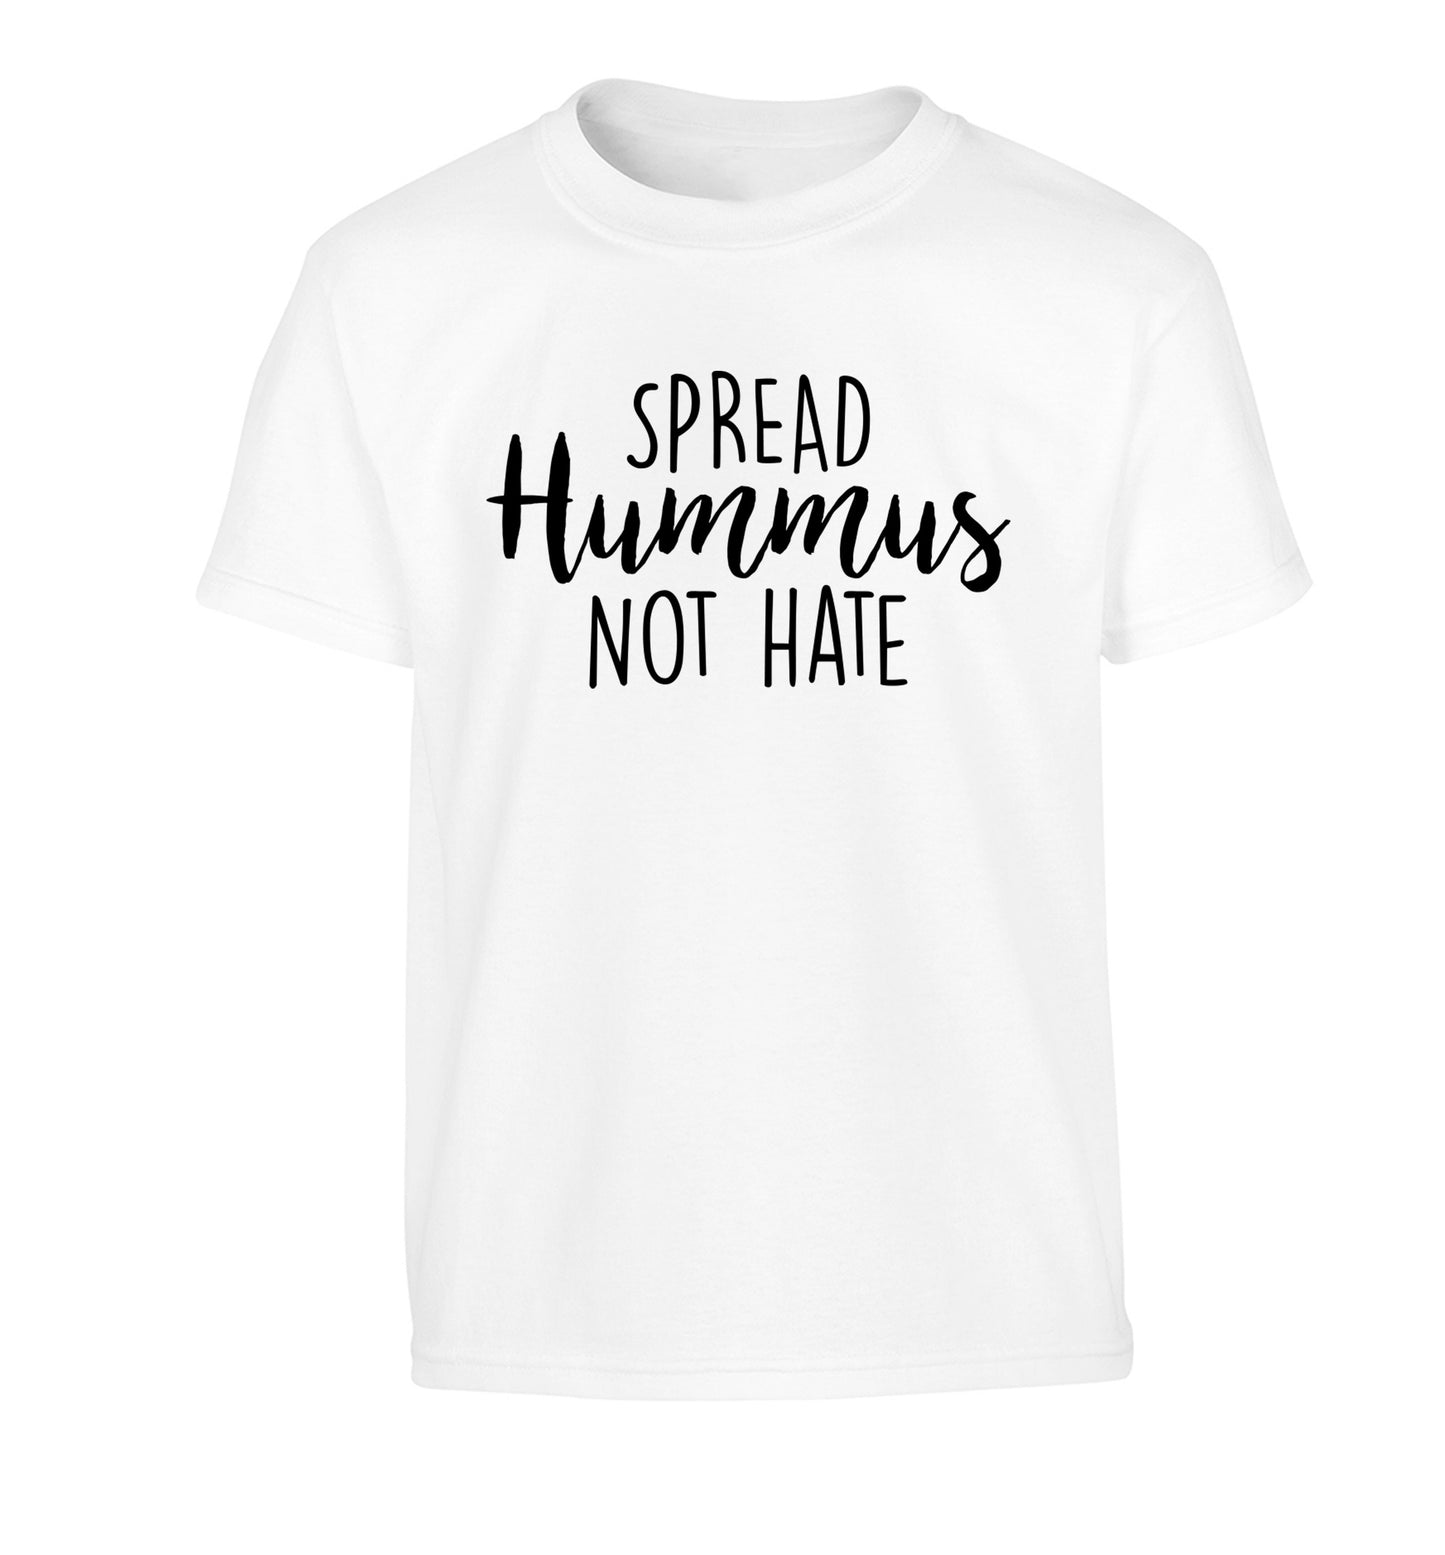 Spread hummus not hate script text Children's white Tshirt 12-14 Years